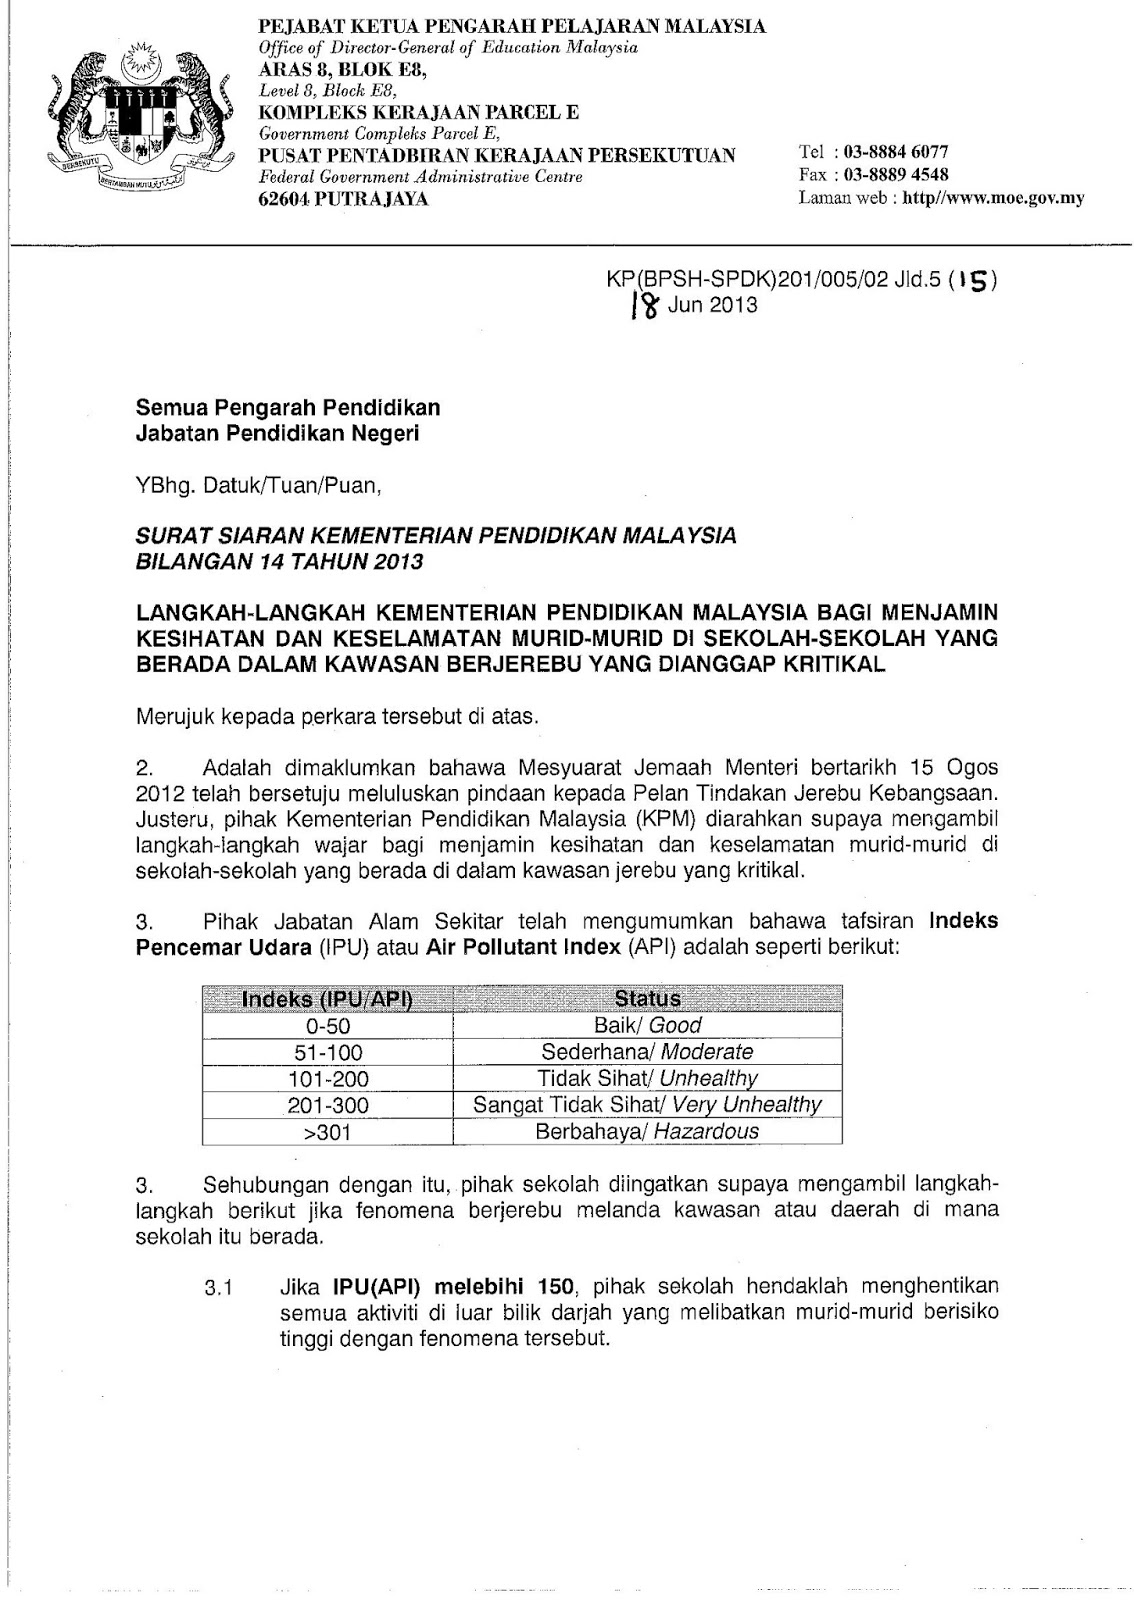 Contoh Surat Rasmi Kementerian Pelajaran Malaysia